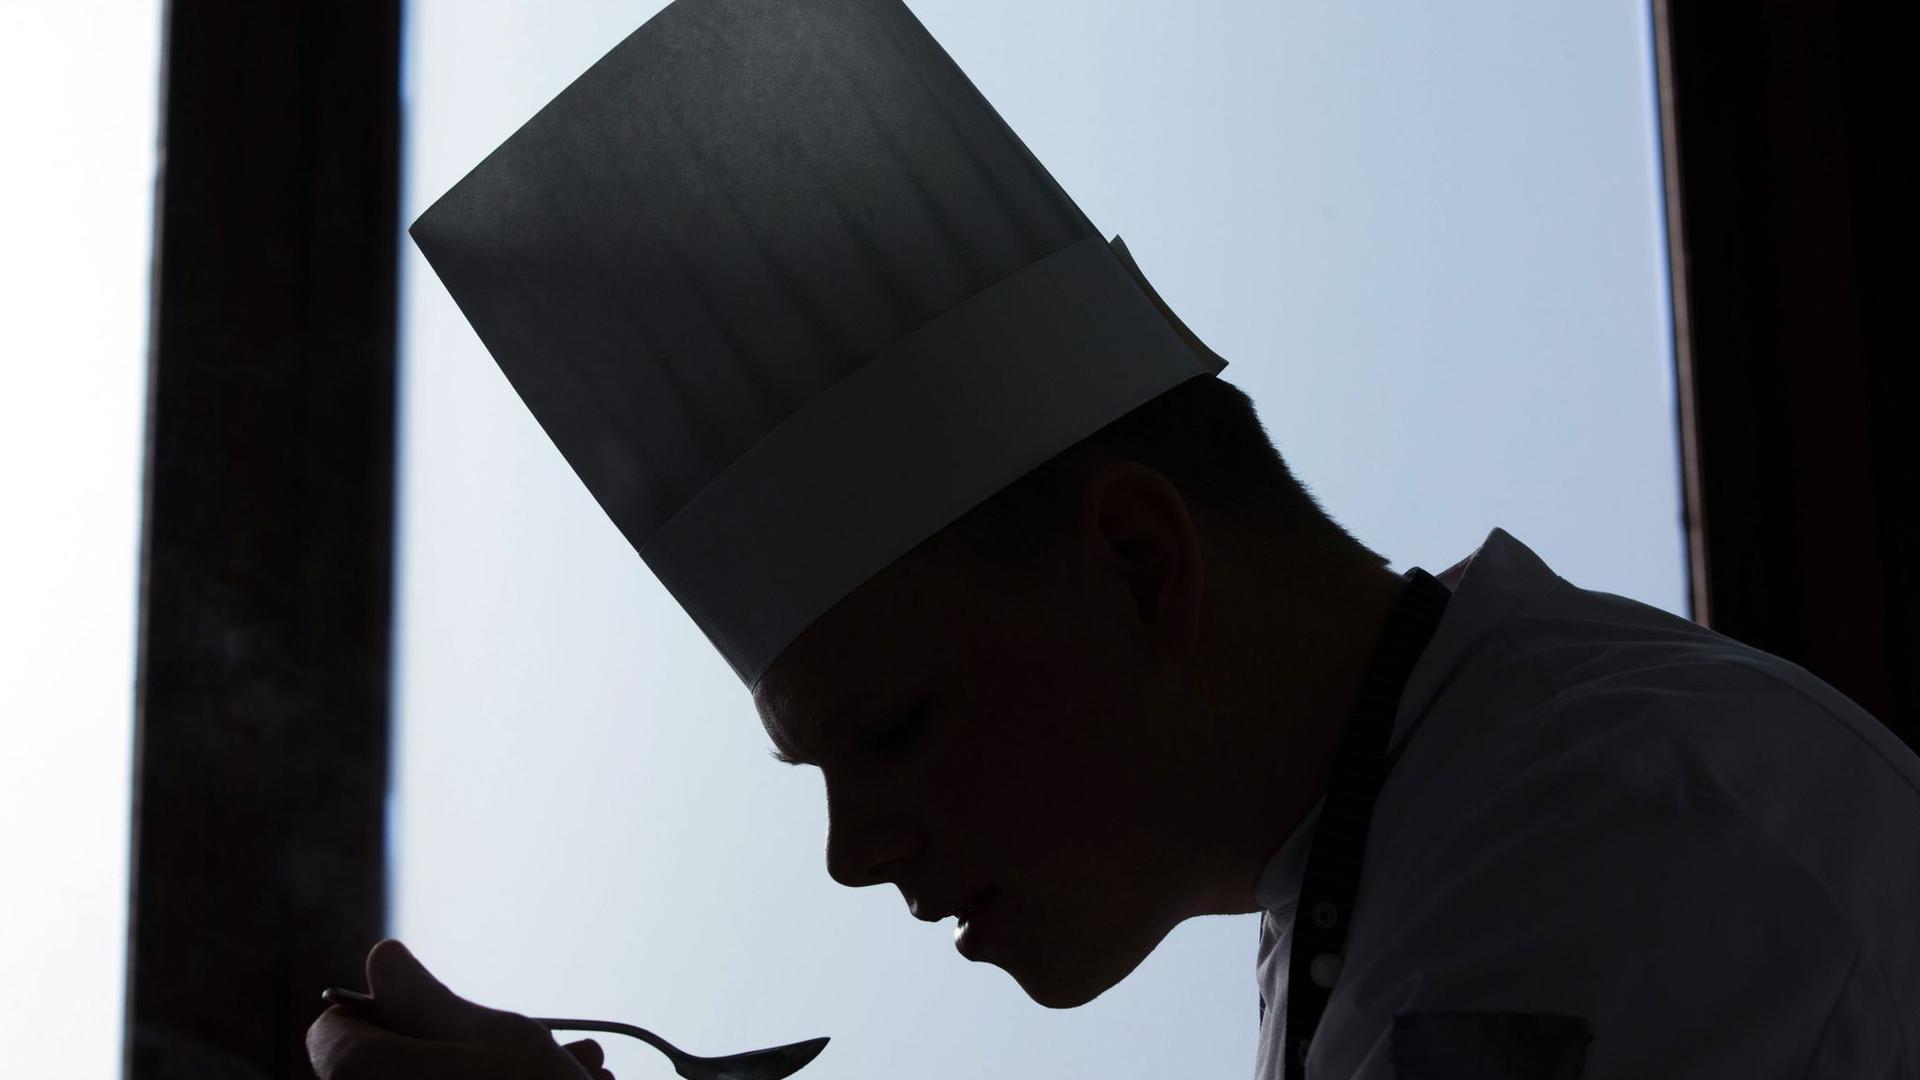 Der Gourmetführer „Gault & Millau“ bewertet Spitzenrestaurants mit so genannten Toques, französisch für Kochhaube. 